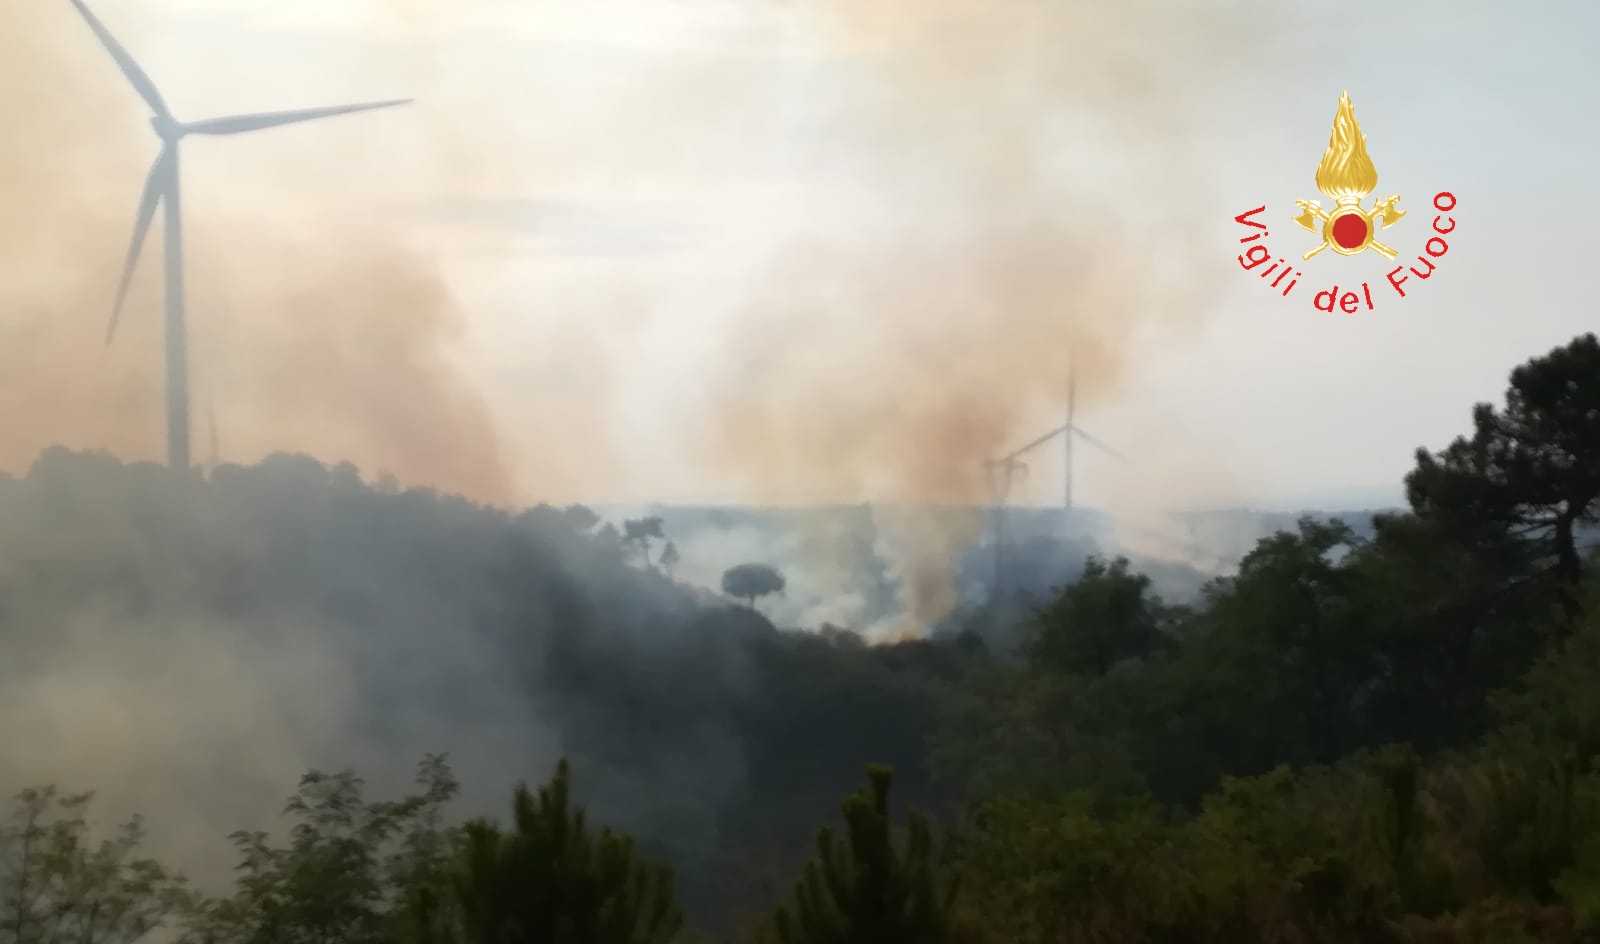 Incendio tra Caraffa e Maida (CZ): a rischio rogo case vicine, tempestivo intervento dei VVF (Video)